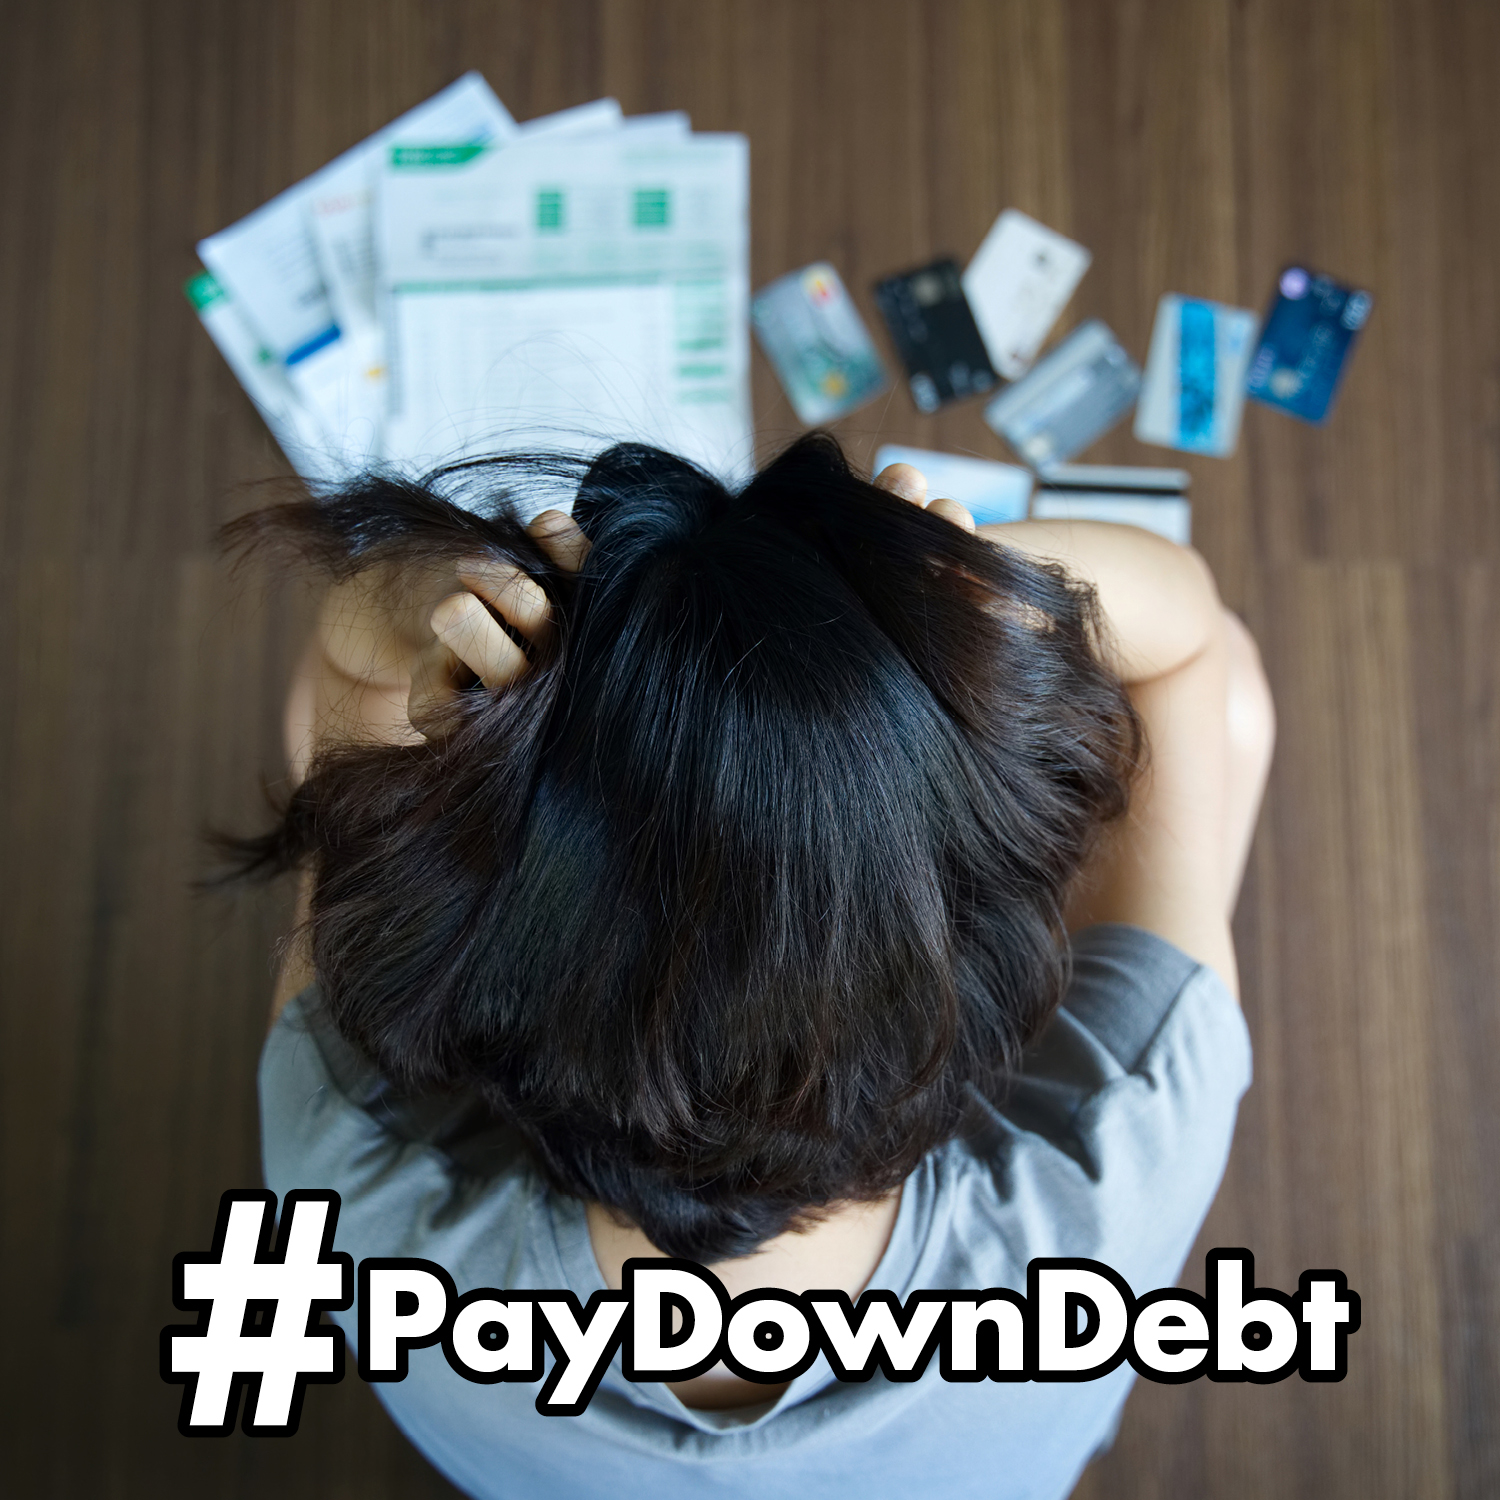 Paying Down Debt